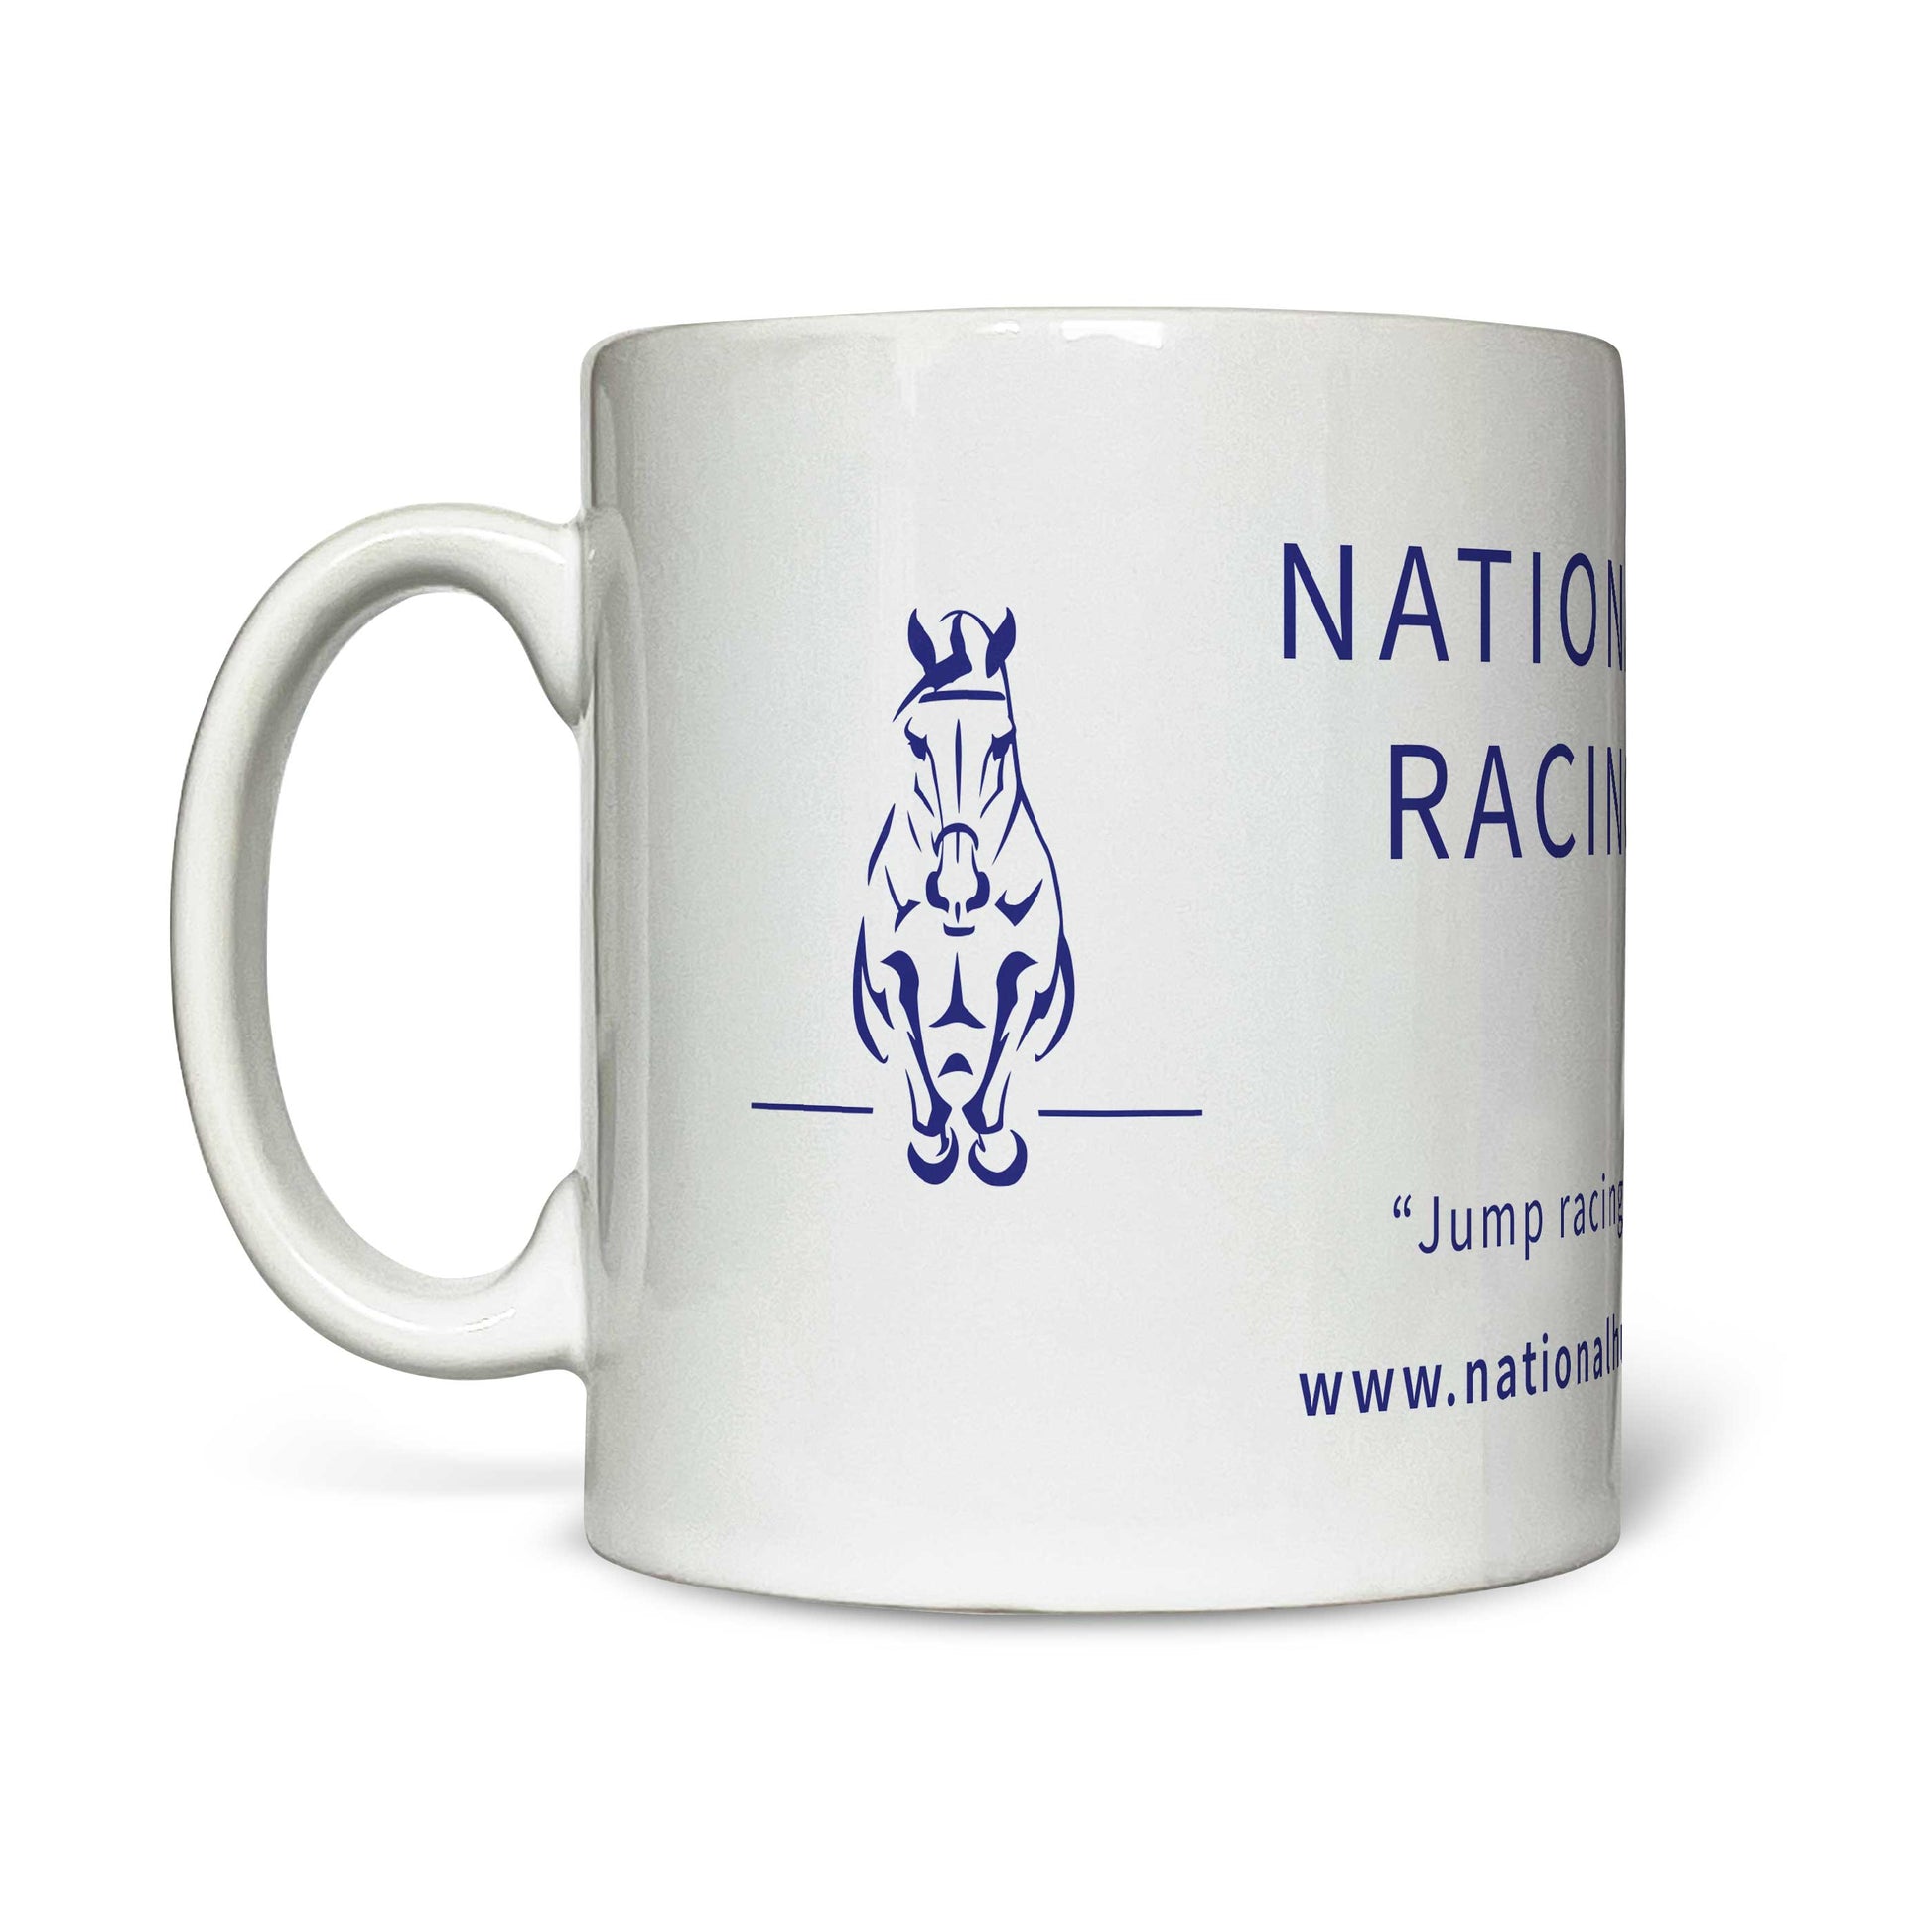 National Hunt Racing Club Mug - Mug - Hacked Up